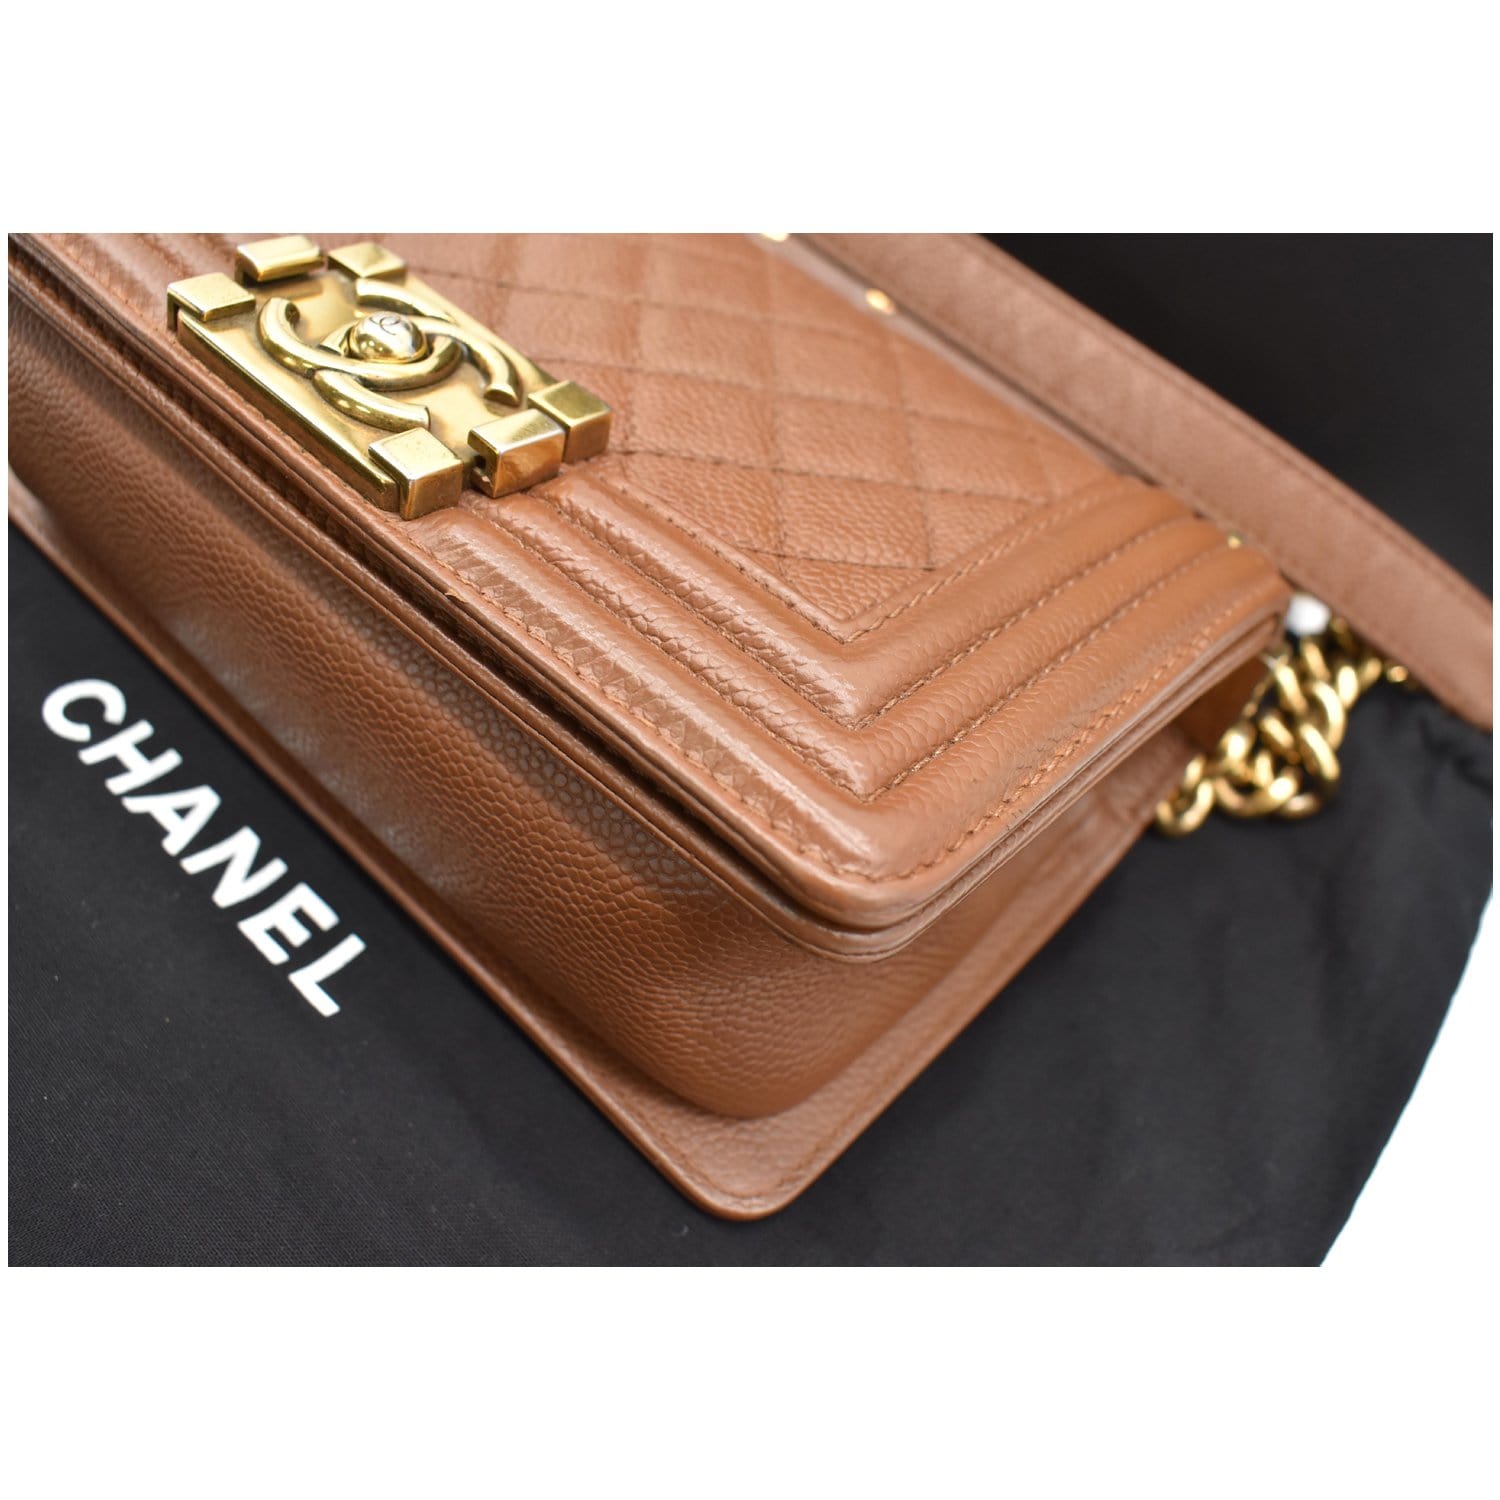 Chanel Small Boy CC Chain Leather Shoulder Bag - DDH